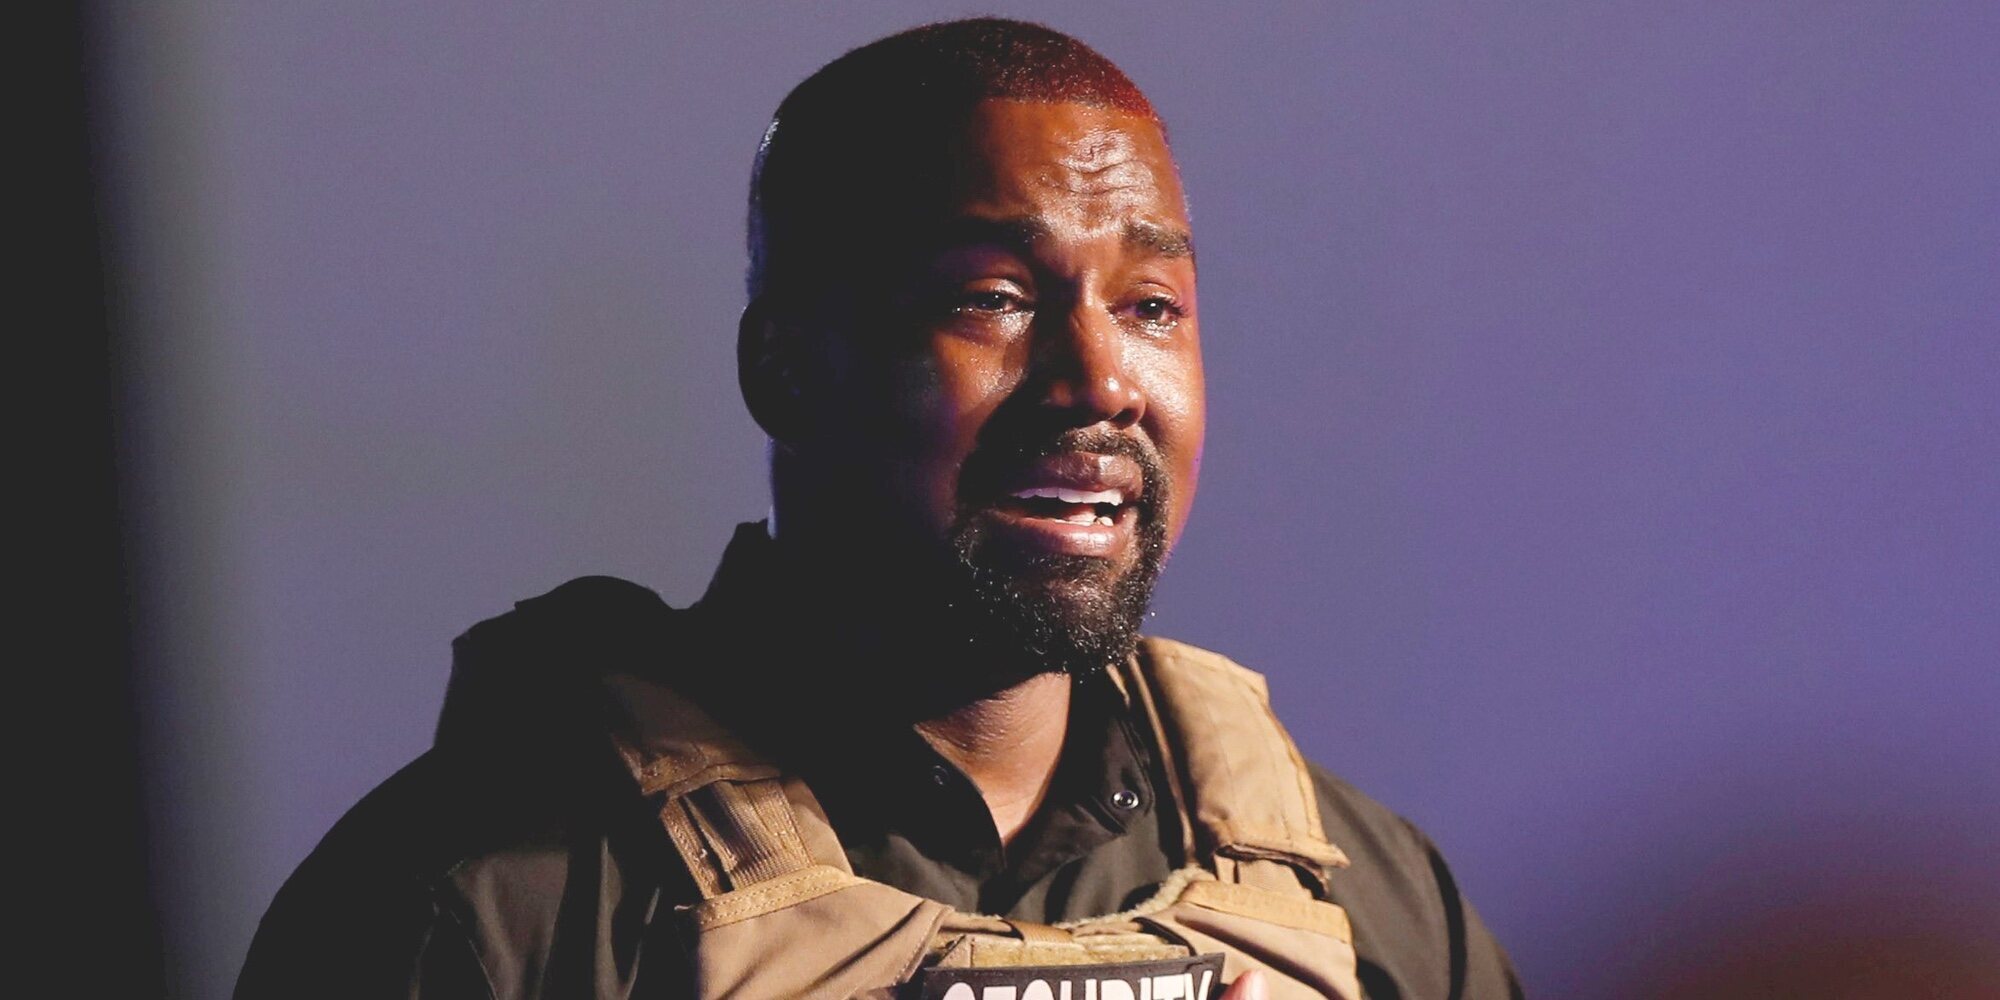 Instagram bloquea la cuenta de Kanye West durante 24 horas tras un insulto racista (pero no por acosar a Kim Kardashian)